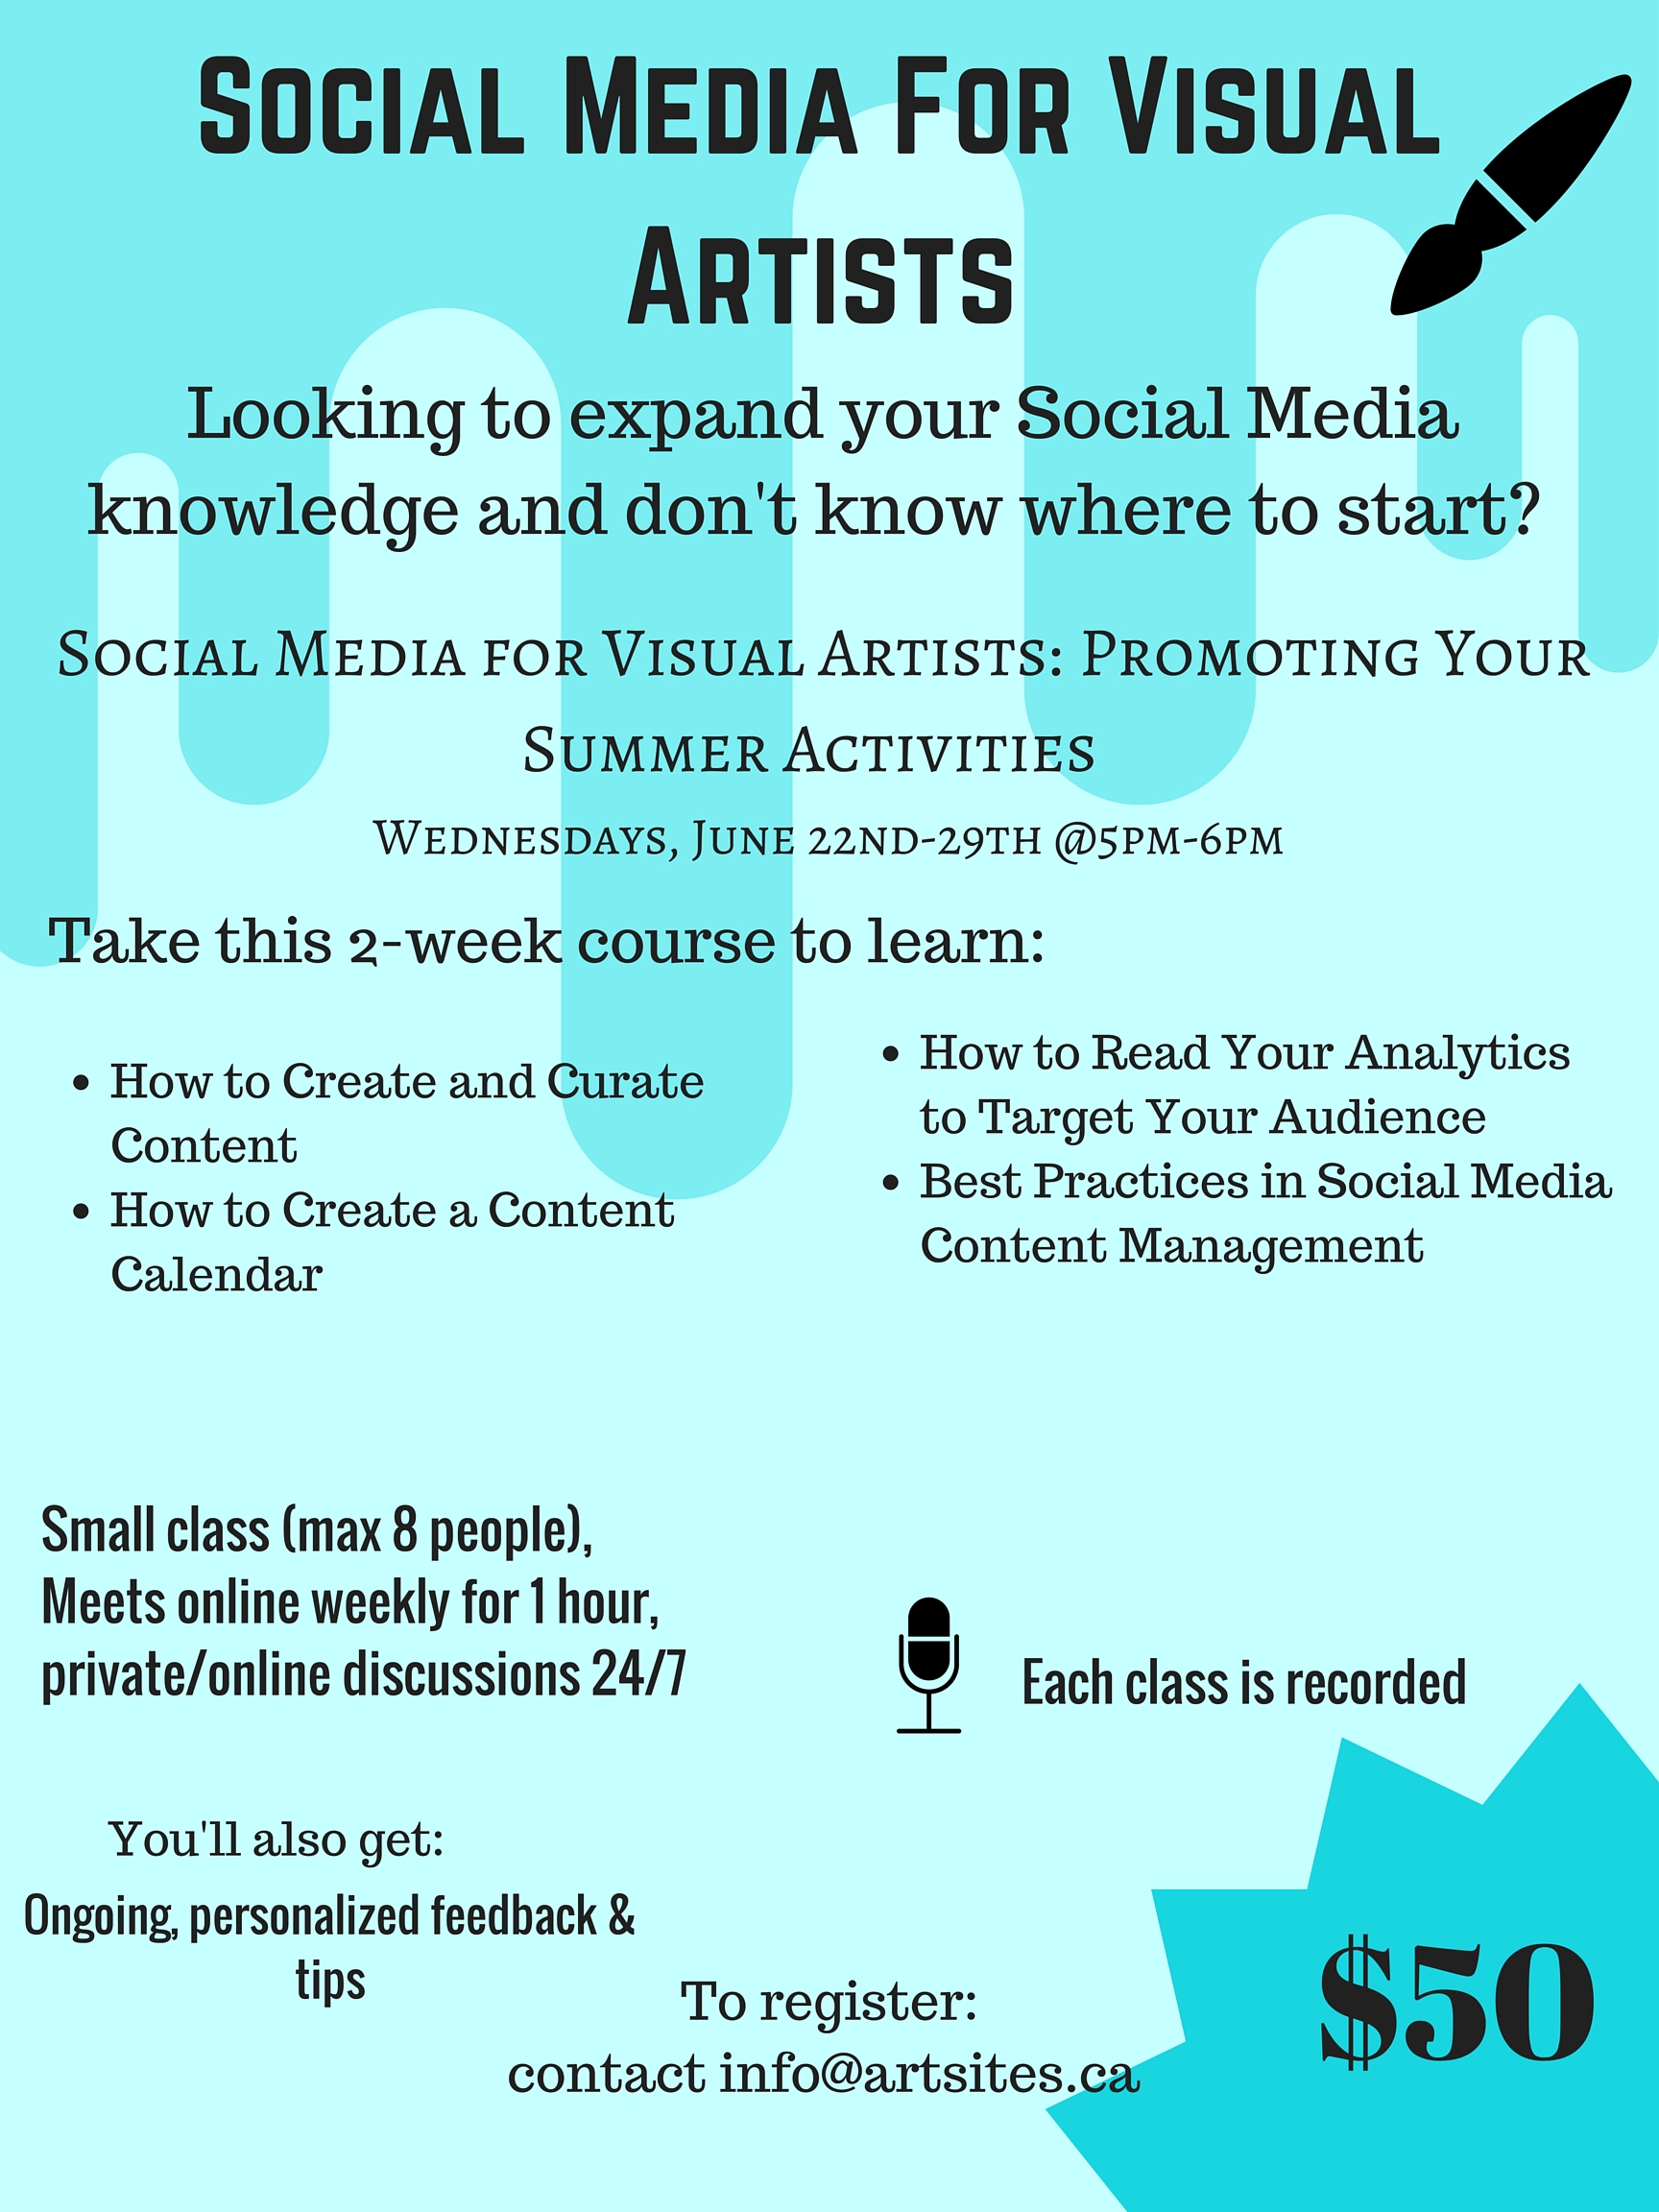 Social Media for Visual Artists Workshop - Instagram